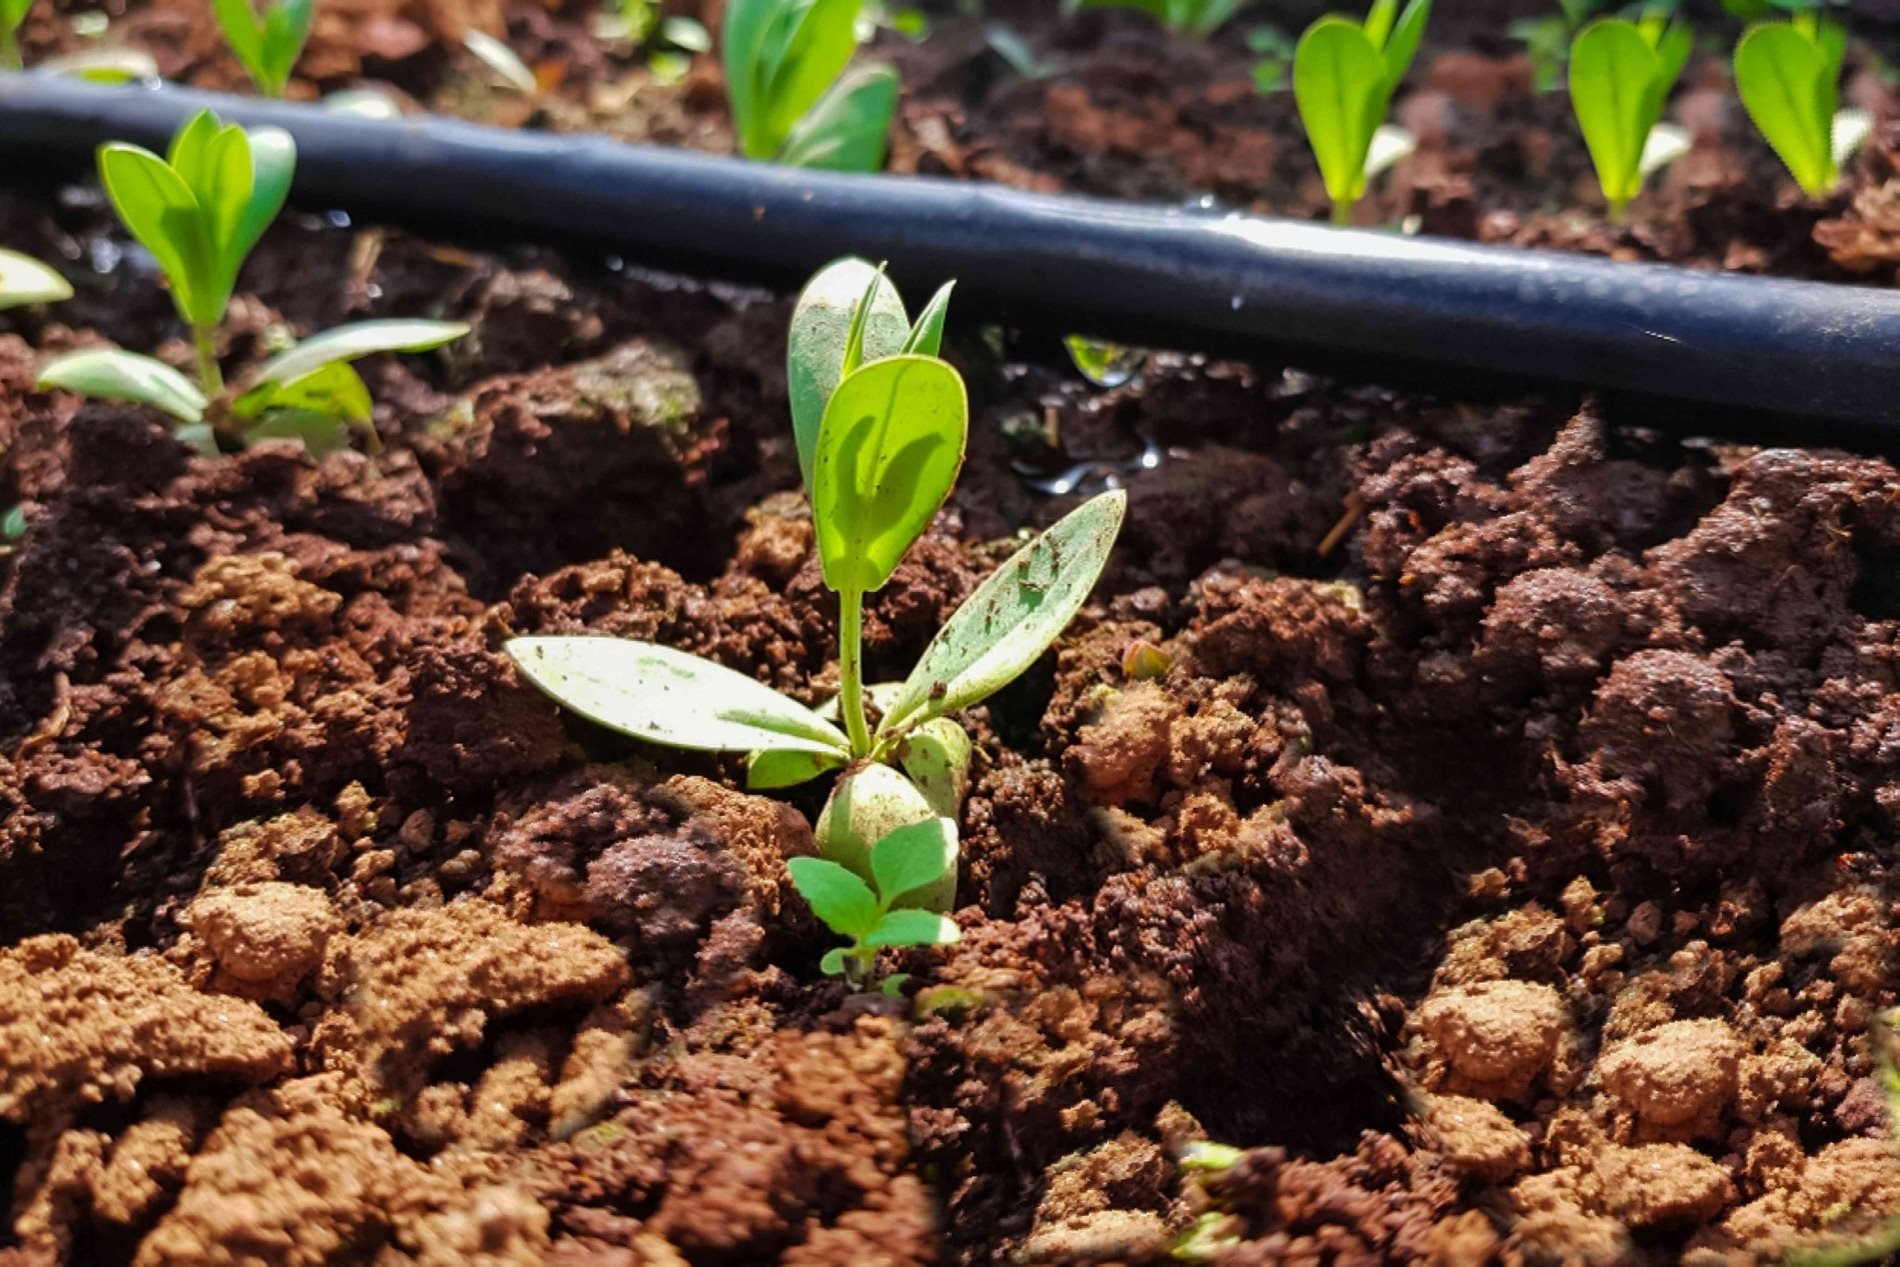 Seedlings sprouting